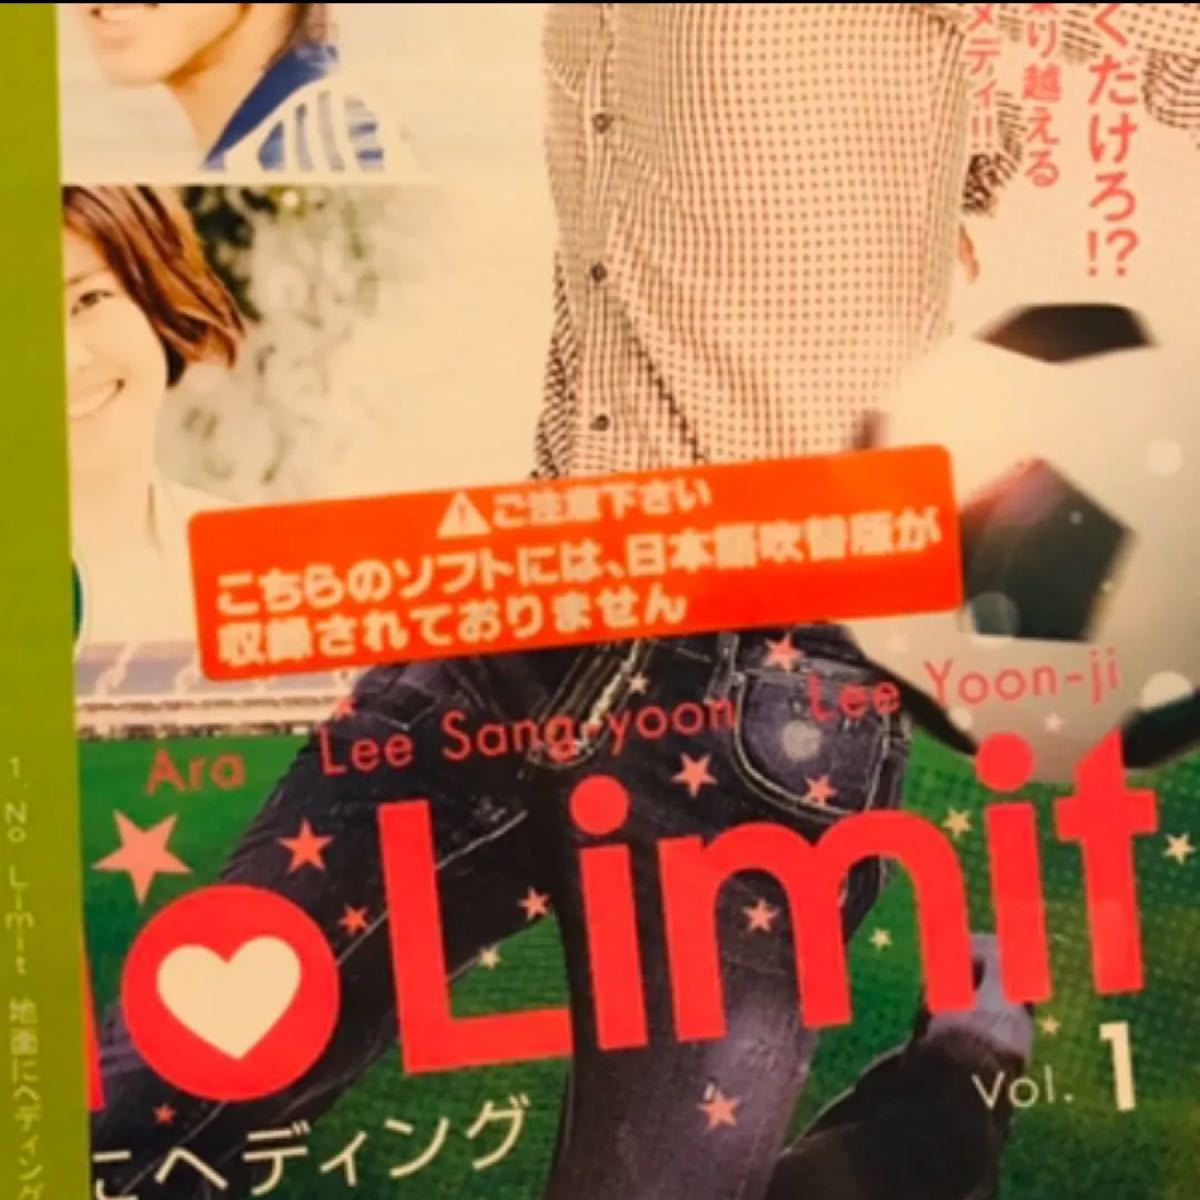 『No Limit〜地面にヘディング〜』全8巻(完) DVD 全話 韓国ドラマ